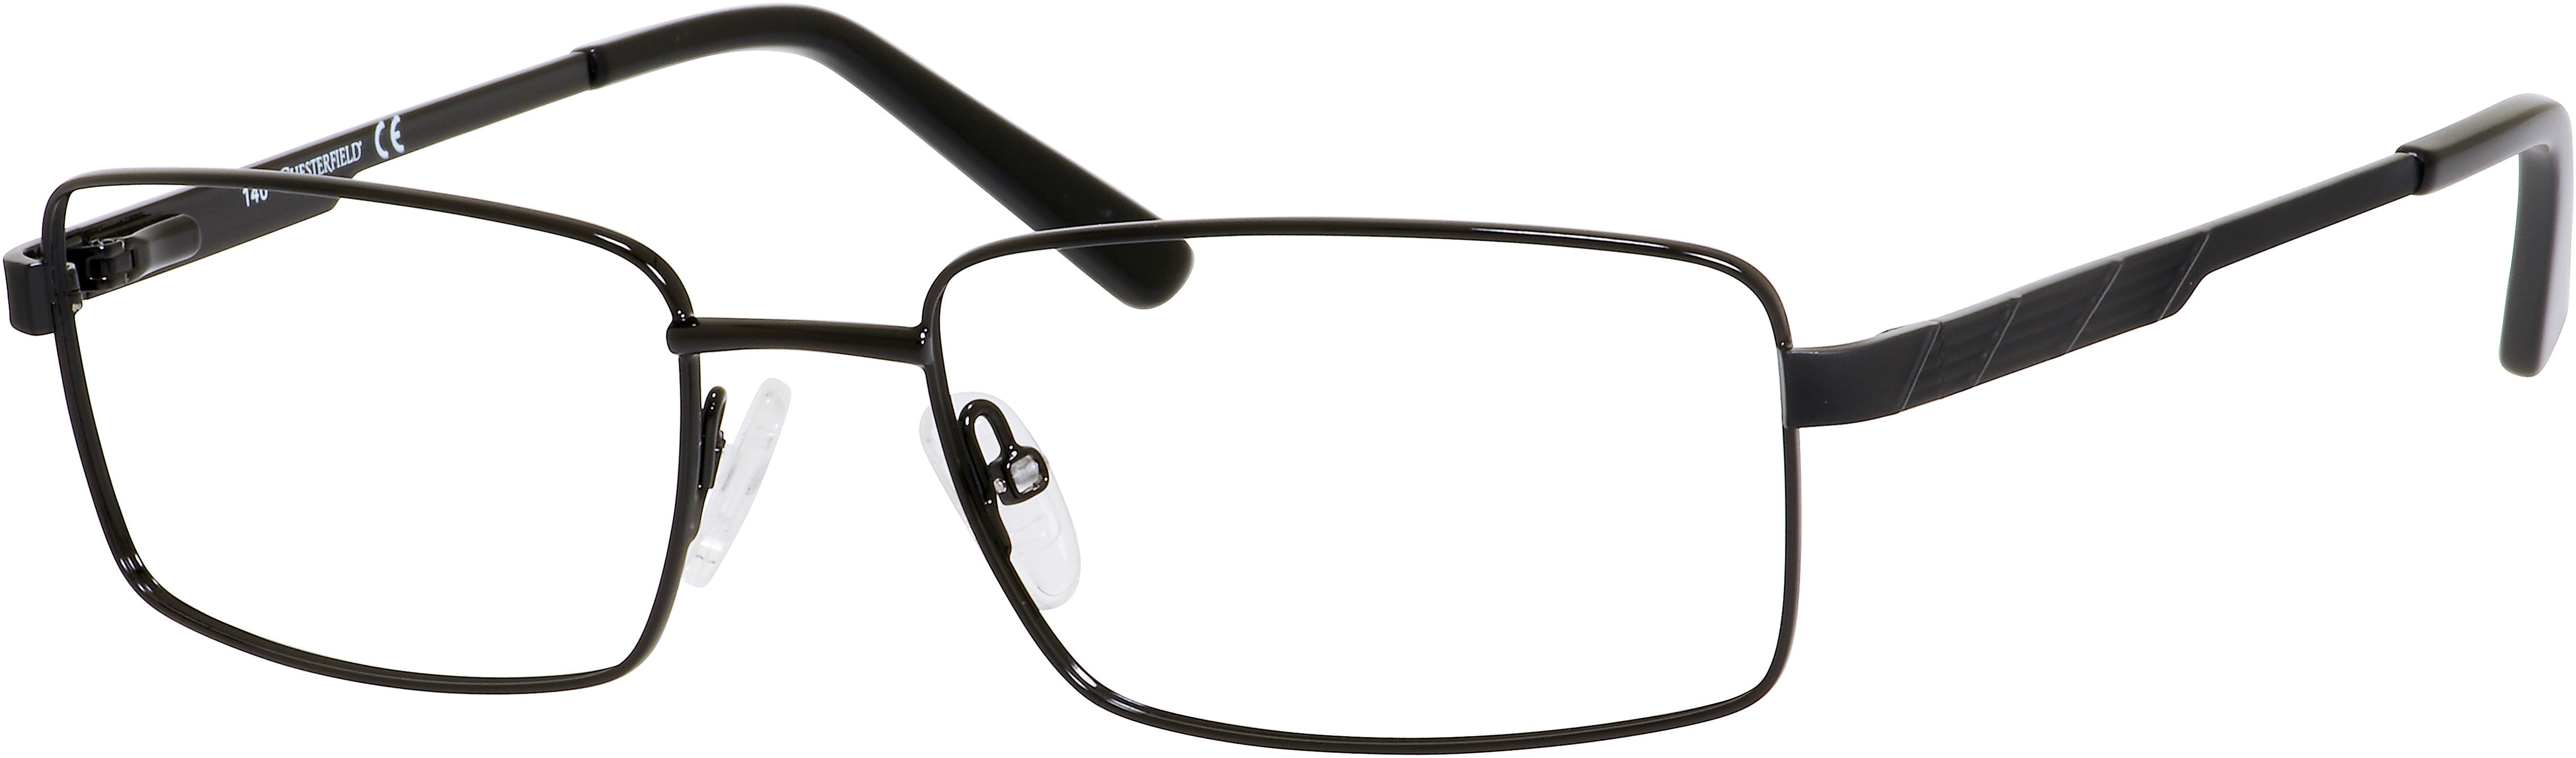  Chesterfield 31 XL Rectangular Eyeglasses 0003-0003  Black (00 Demo Lens)